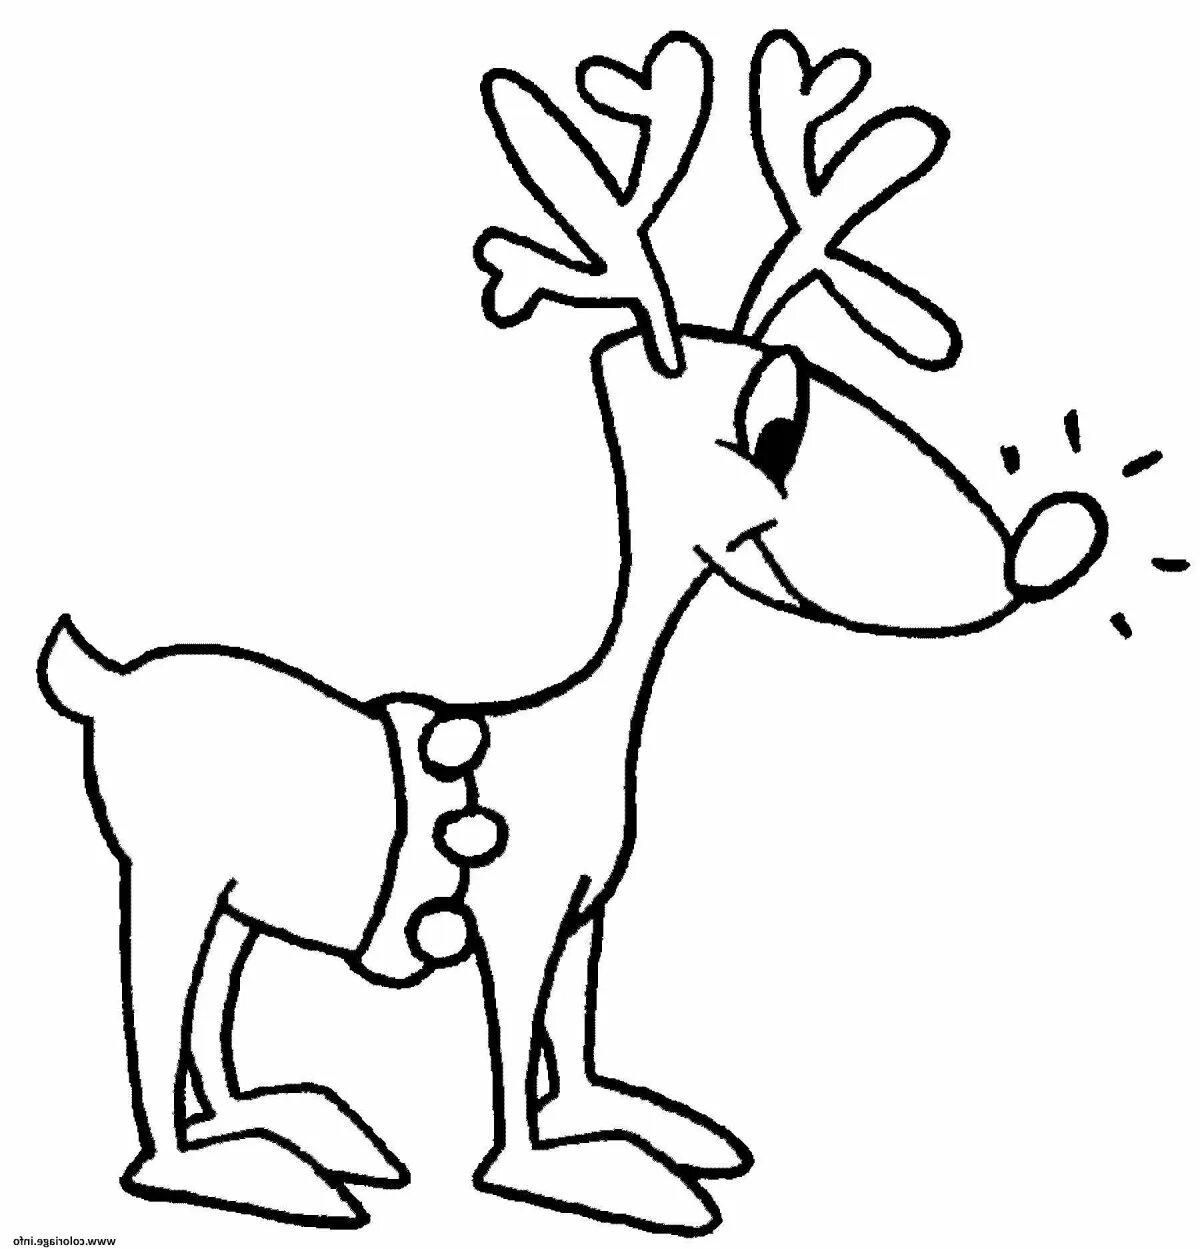 Christmas deer fun coloring book for kids